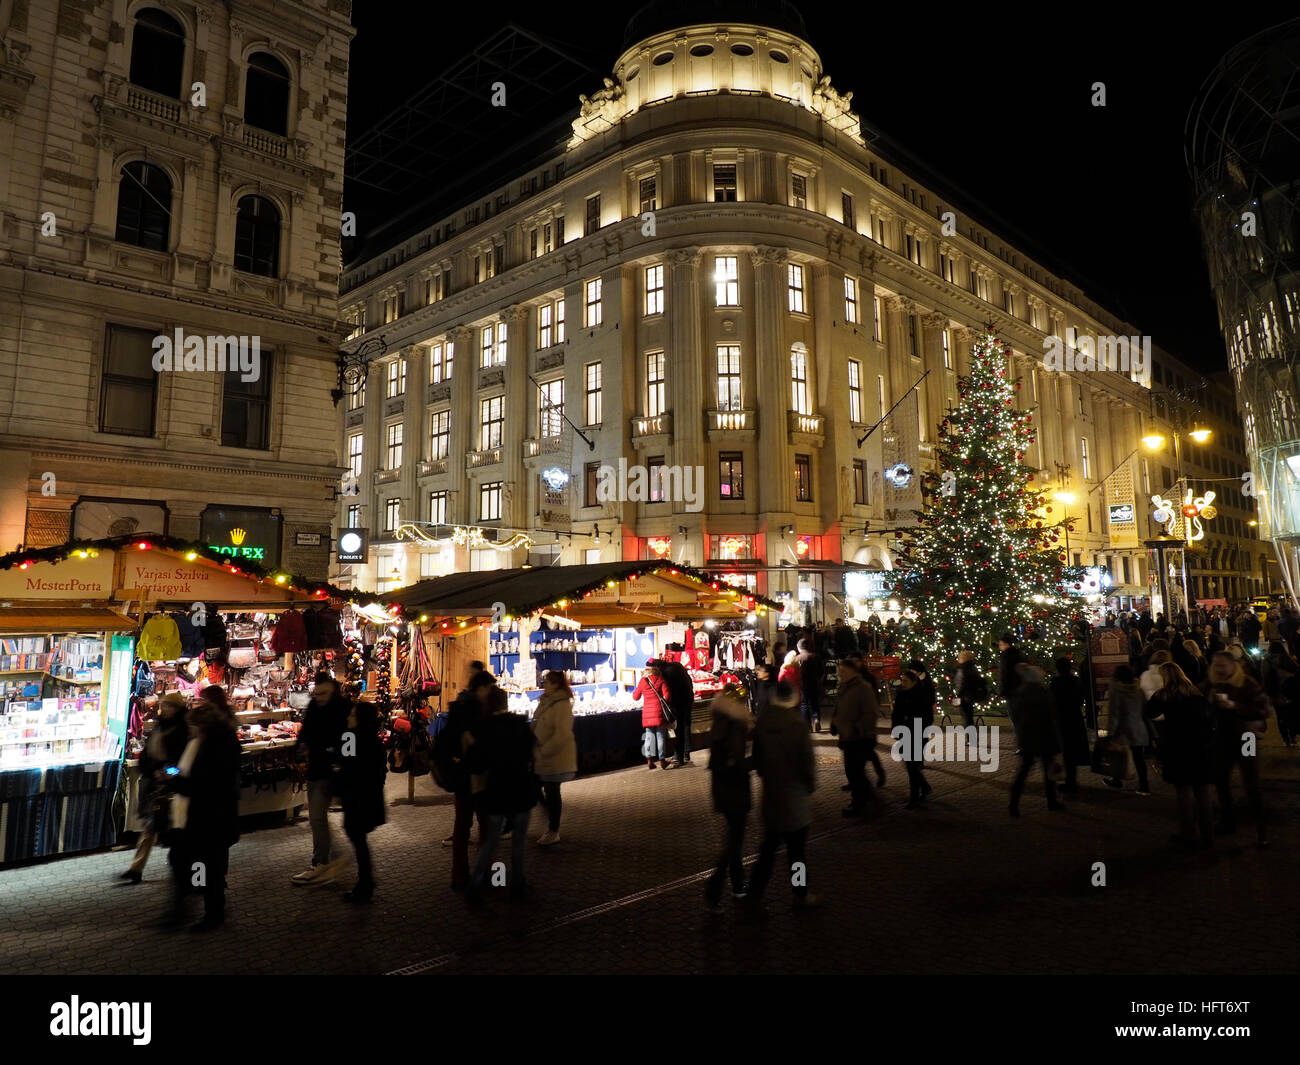 Marché de Noël sur la place Vorosmarty ter dans le centre-ville de Budapest, Hongrie Banque D'Images